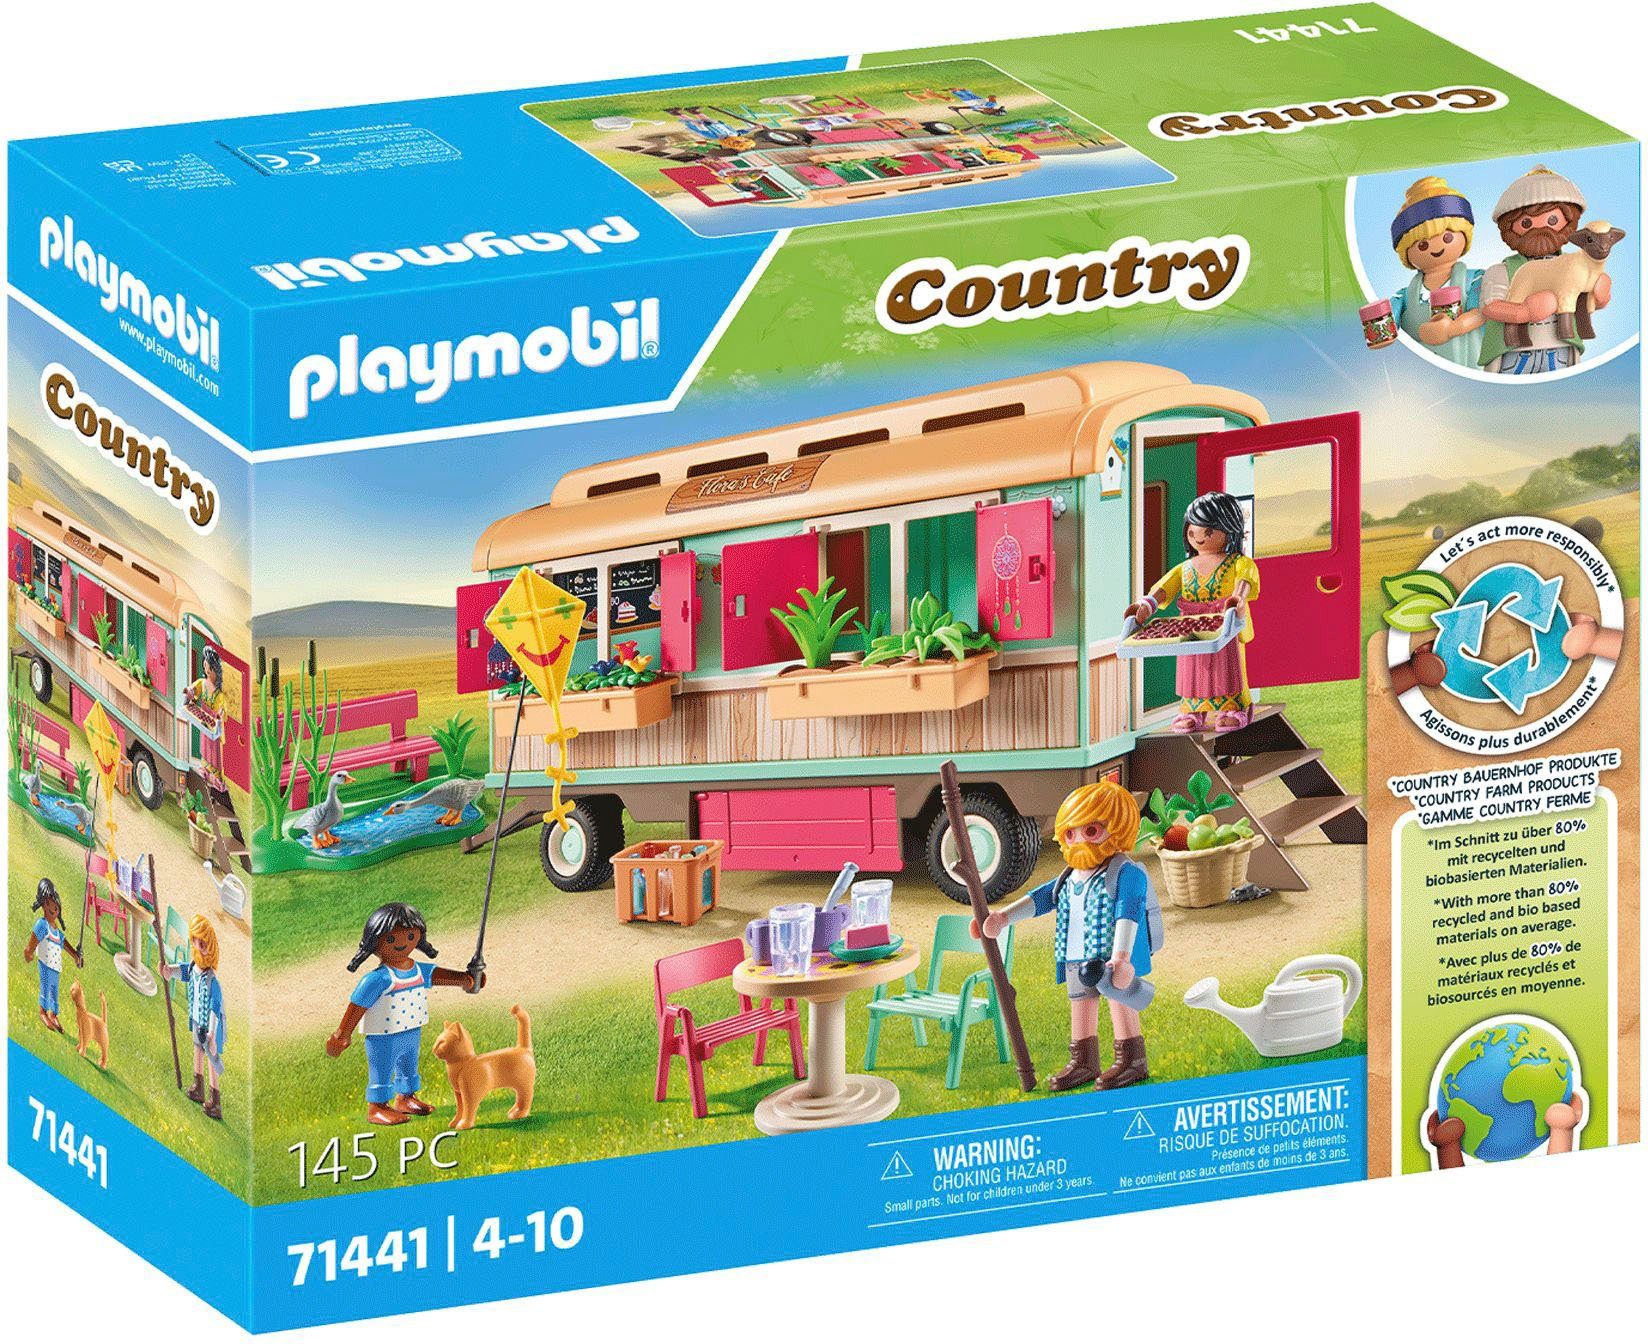 Playmobil® Konstruktions-Spielset Gemütliches Bauwagencafé (71441),  Country, (145 St), teilweise aus recyceltem Material; Made in Germany, Zu  über 80 % aus nachhaltigen Materialien hergestellt